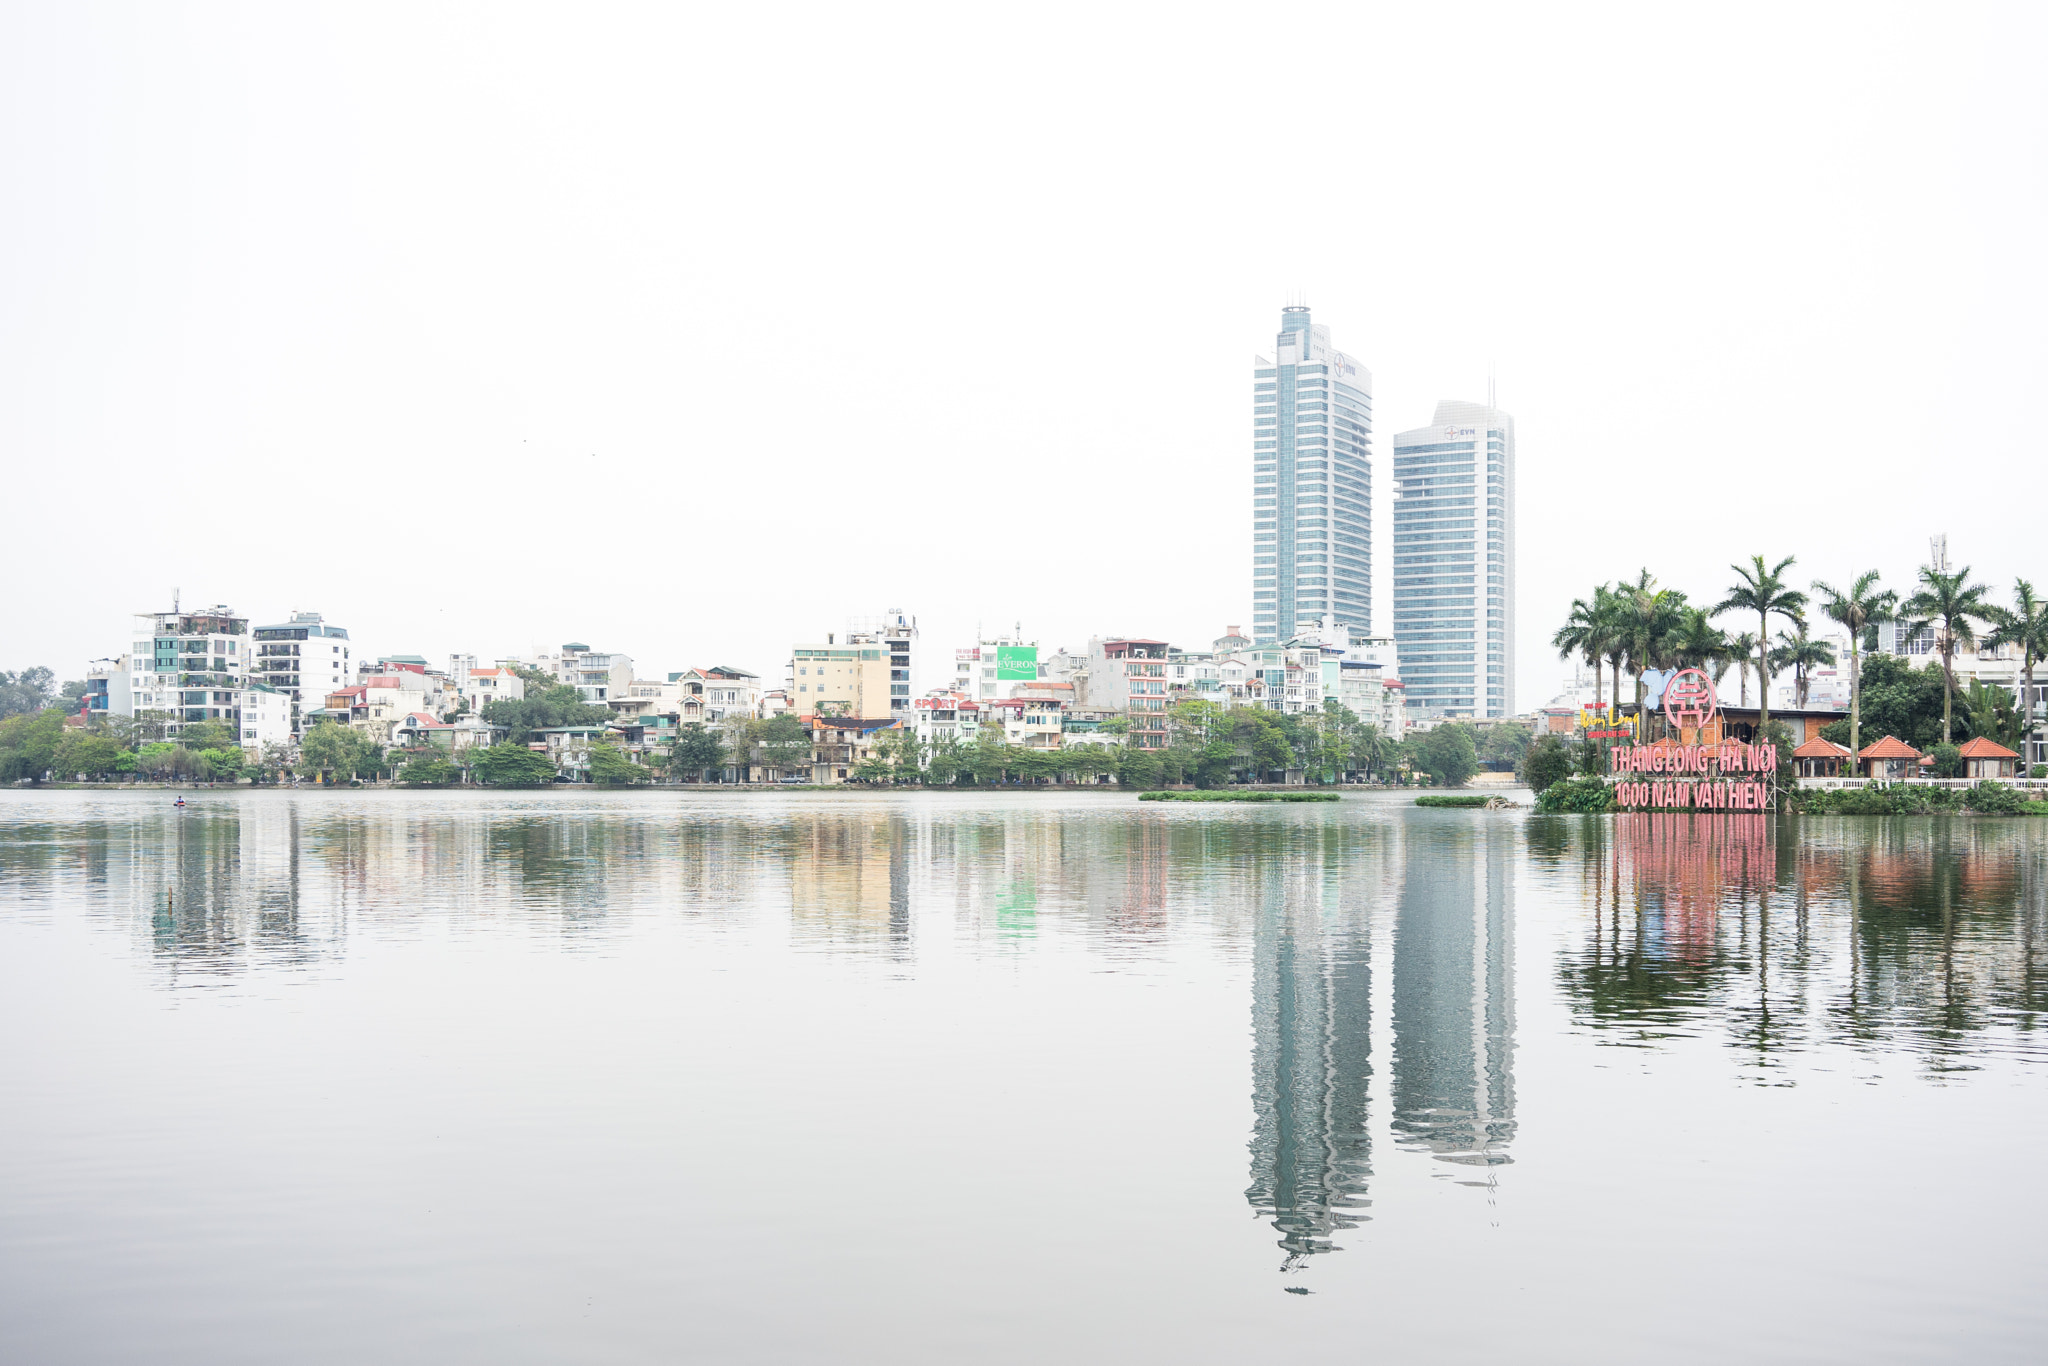 Sony Sonnar T* FE 35mm F2.8 ZA sample photo. Hanoi cityscape photography